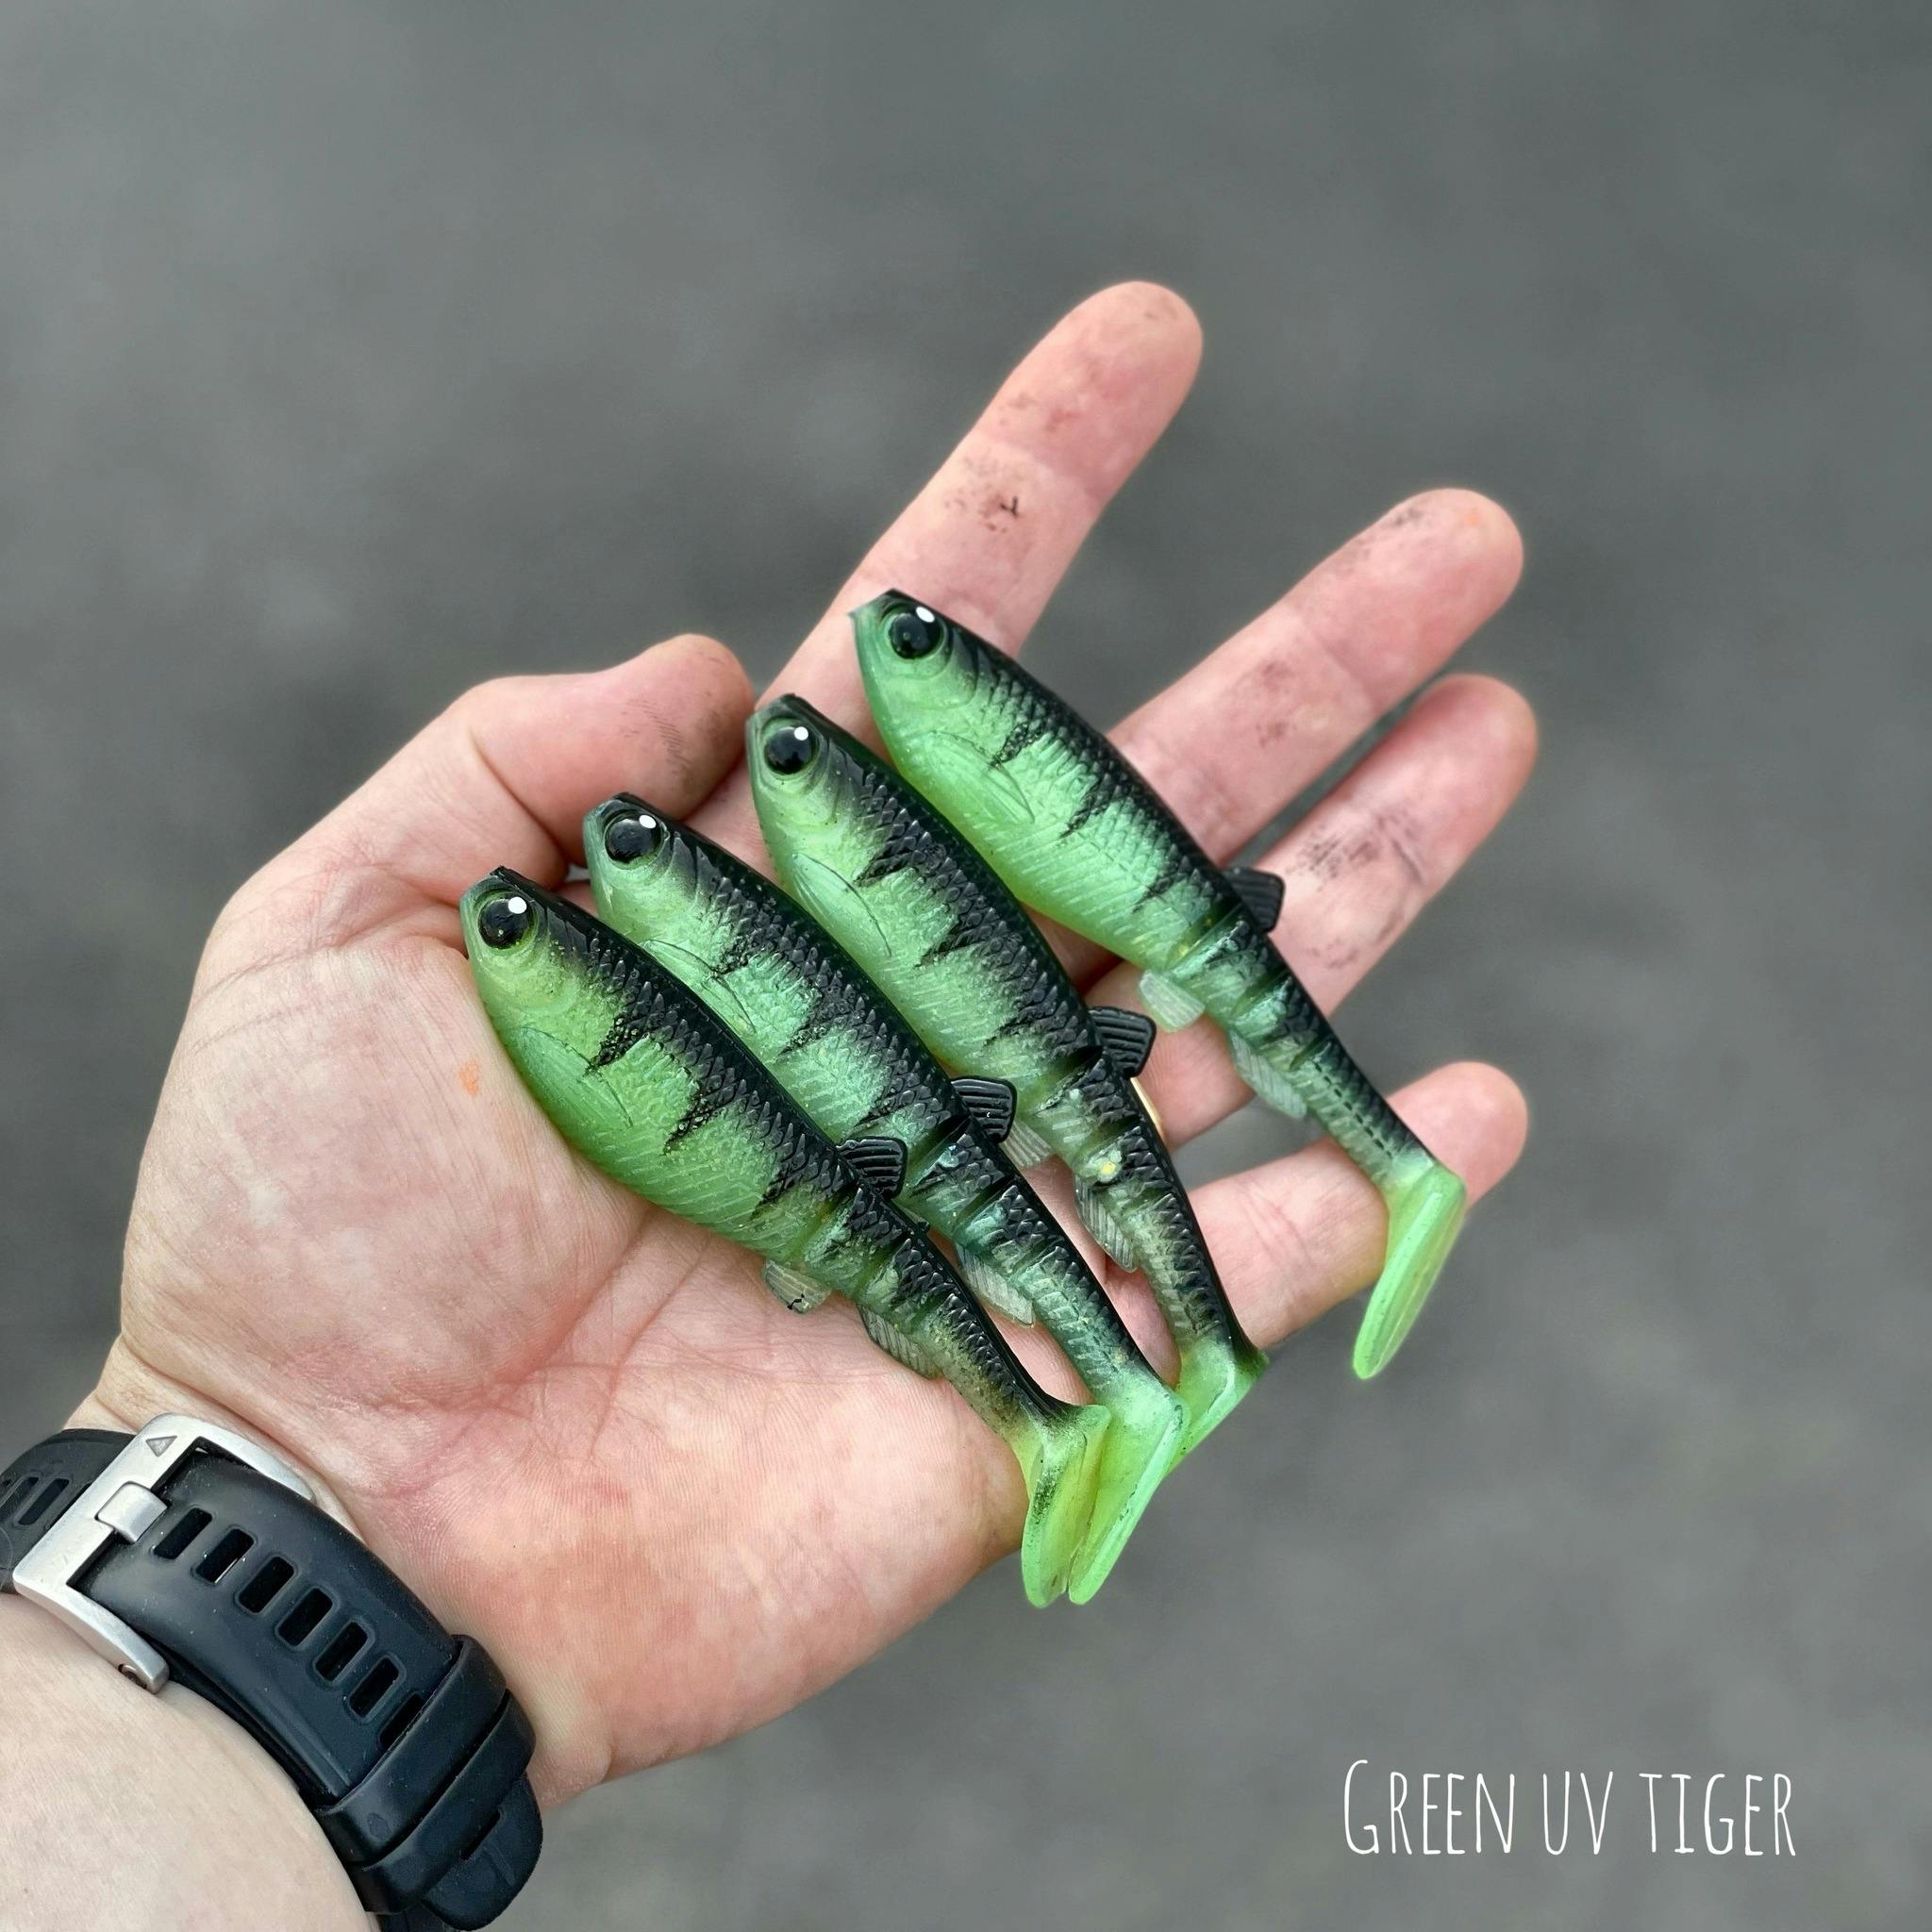 GigabiteV2 Green UV Tiger 10cm - 4pcs